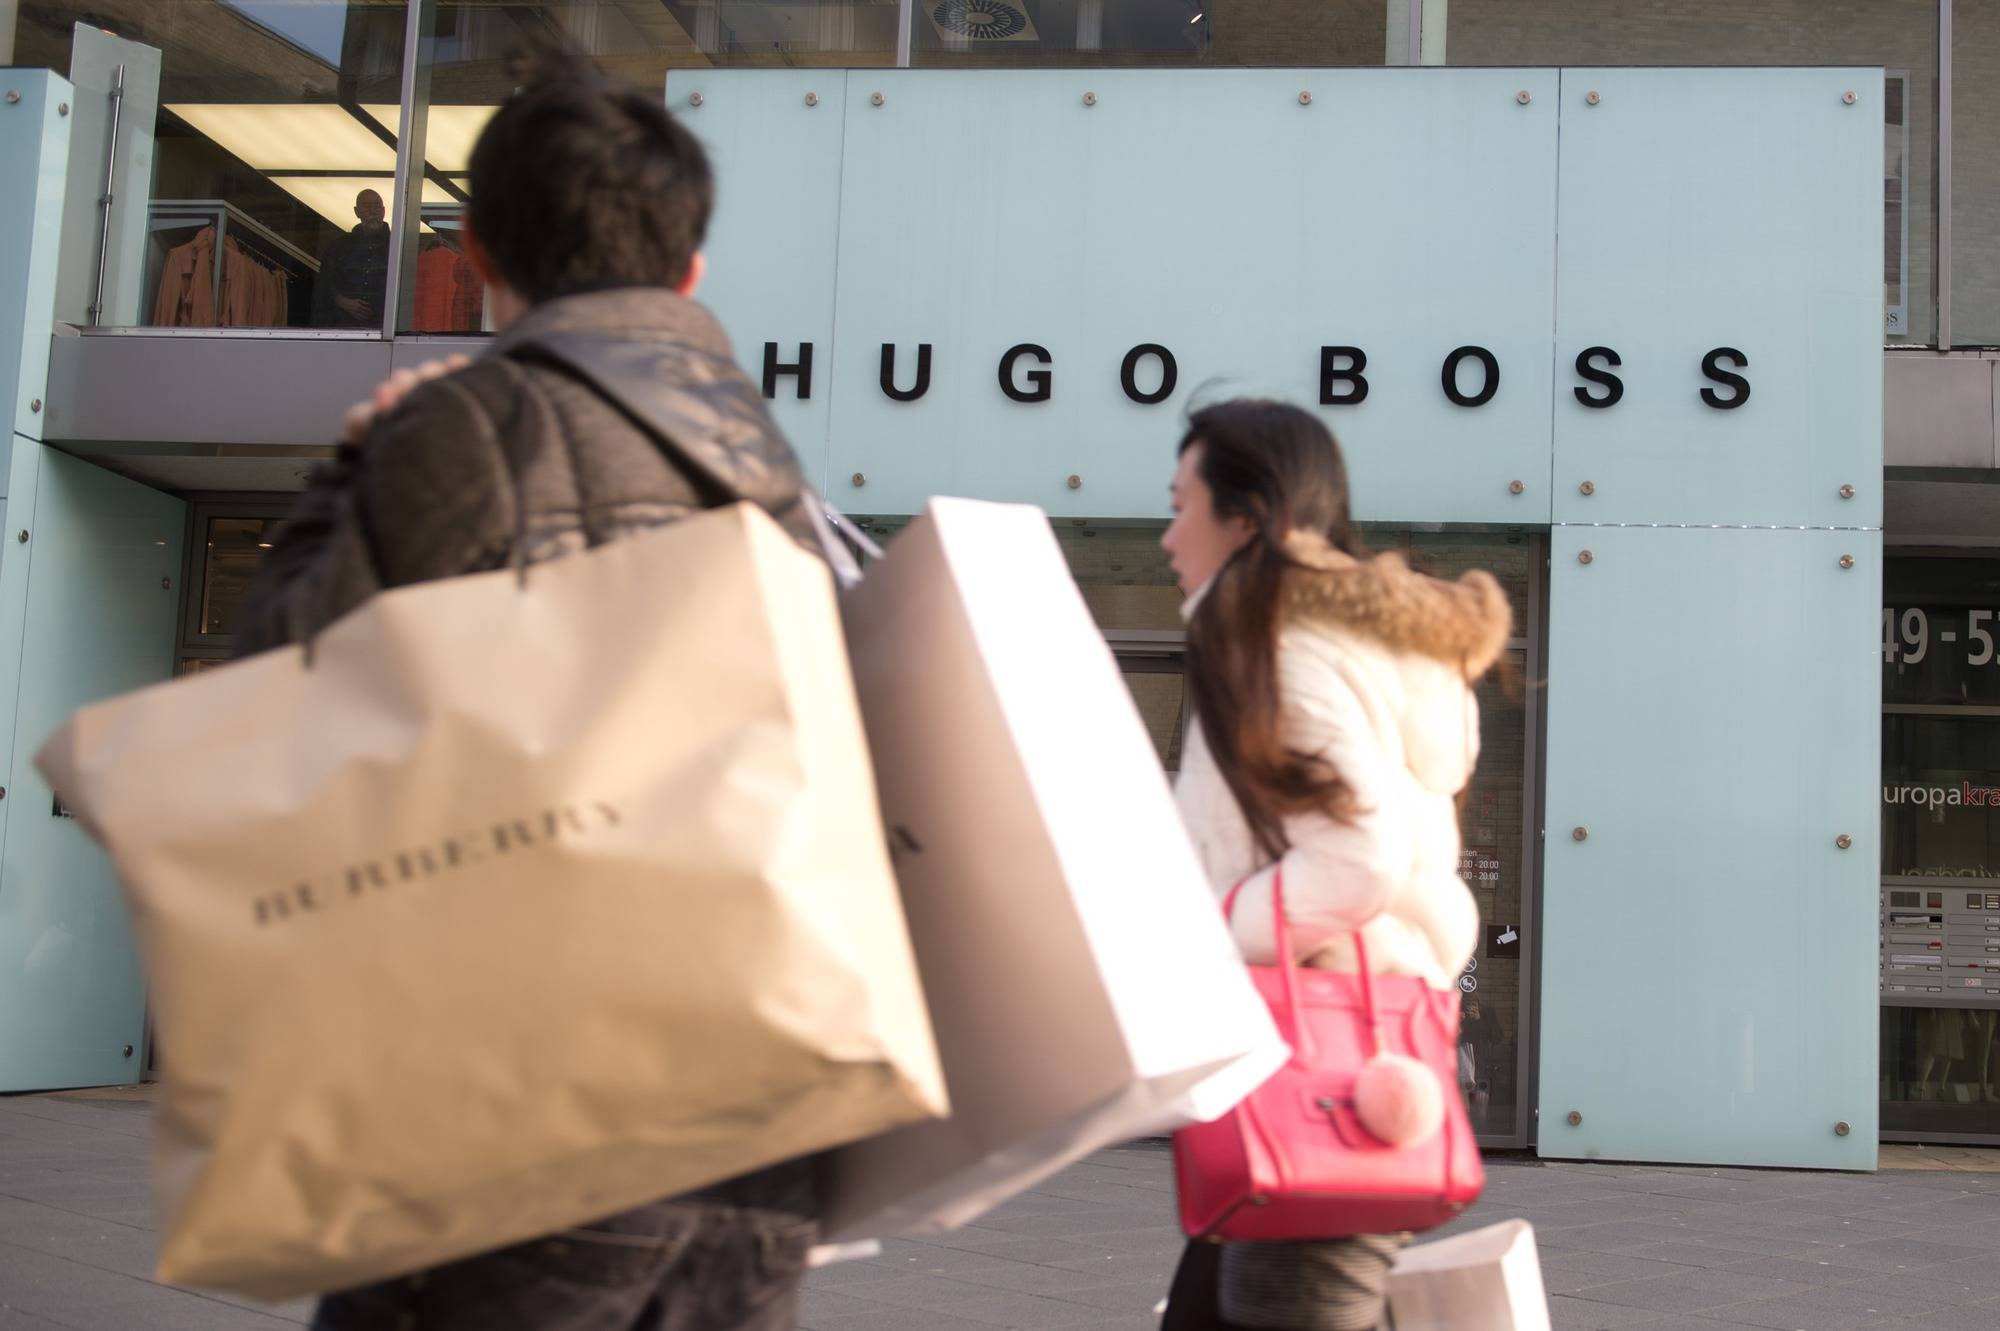 Hugo Boss Kurzt Nach Gewinnruckgang Dividende Wirtschaft Regional Rnz